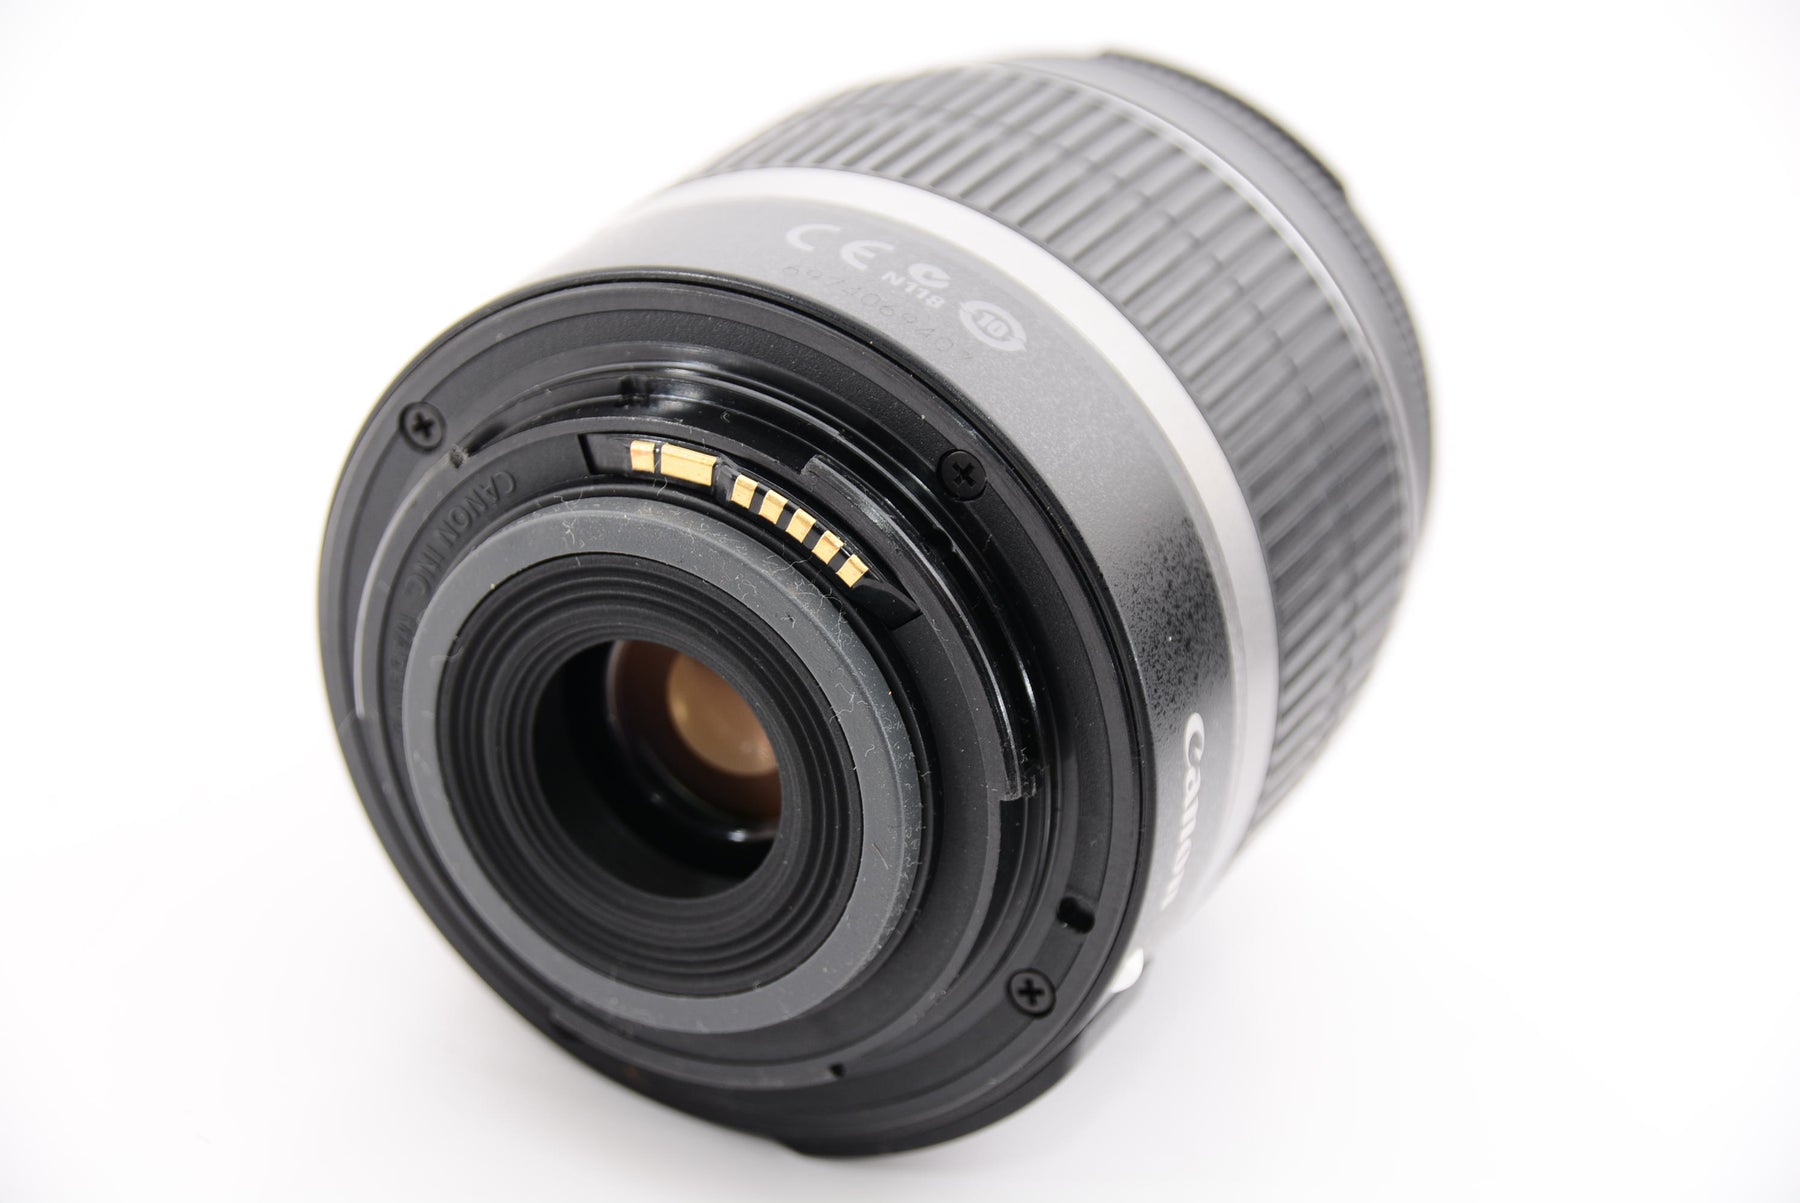 Canon デジタル一眼レフカメラ EOS Kiss X4 EF-S 18-55 IS レンズキット KISSX4-1855ISLK - 5